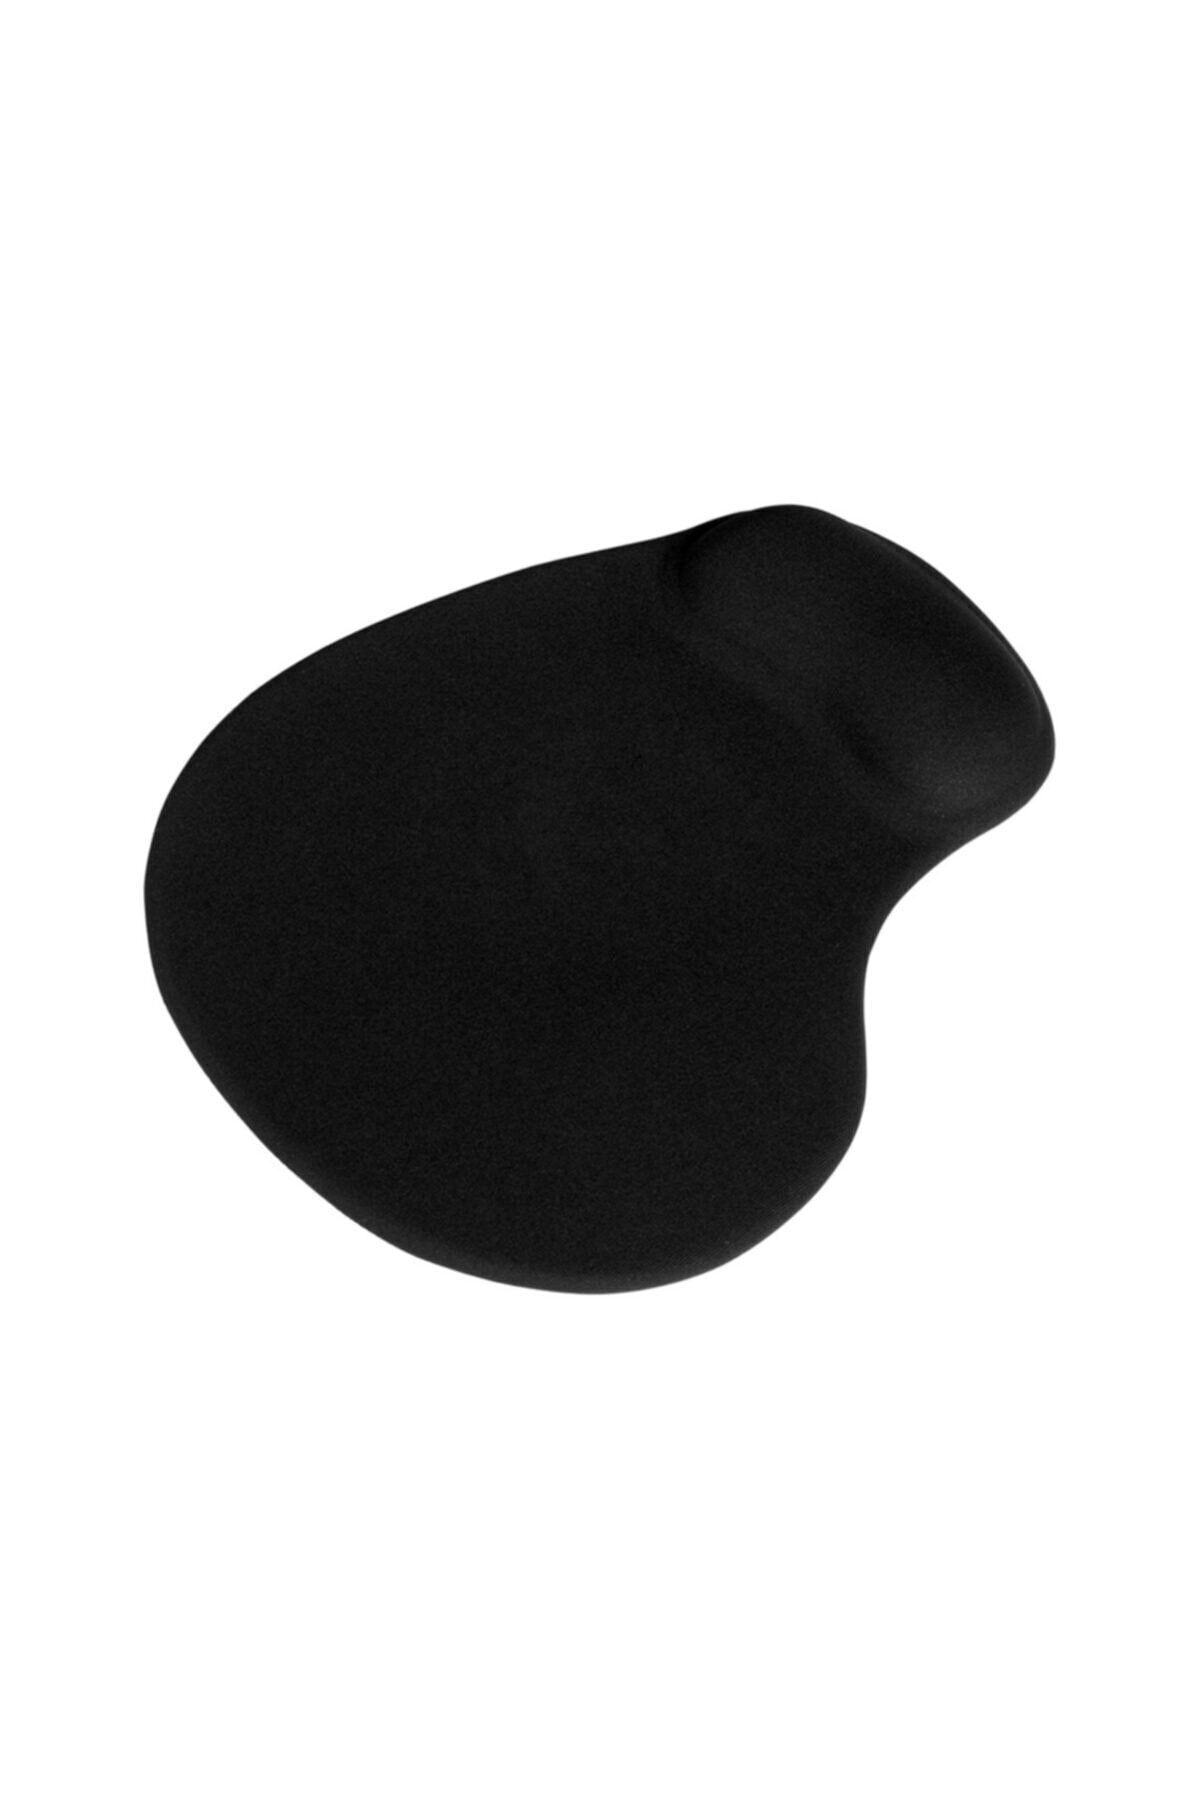 3M Mouse Pad Jel Bilek Yastıklı fmp-050 Siyah